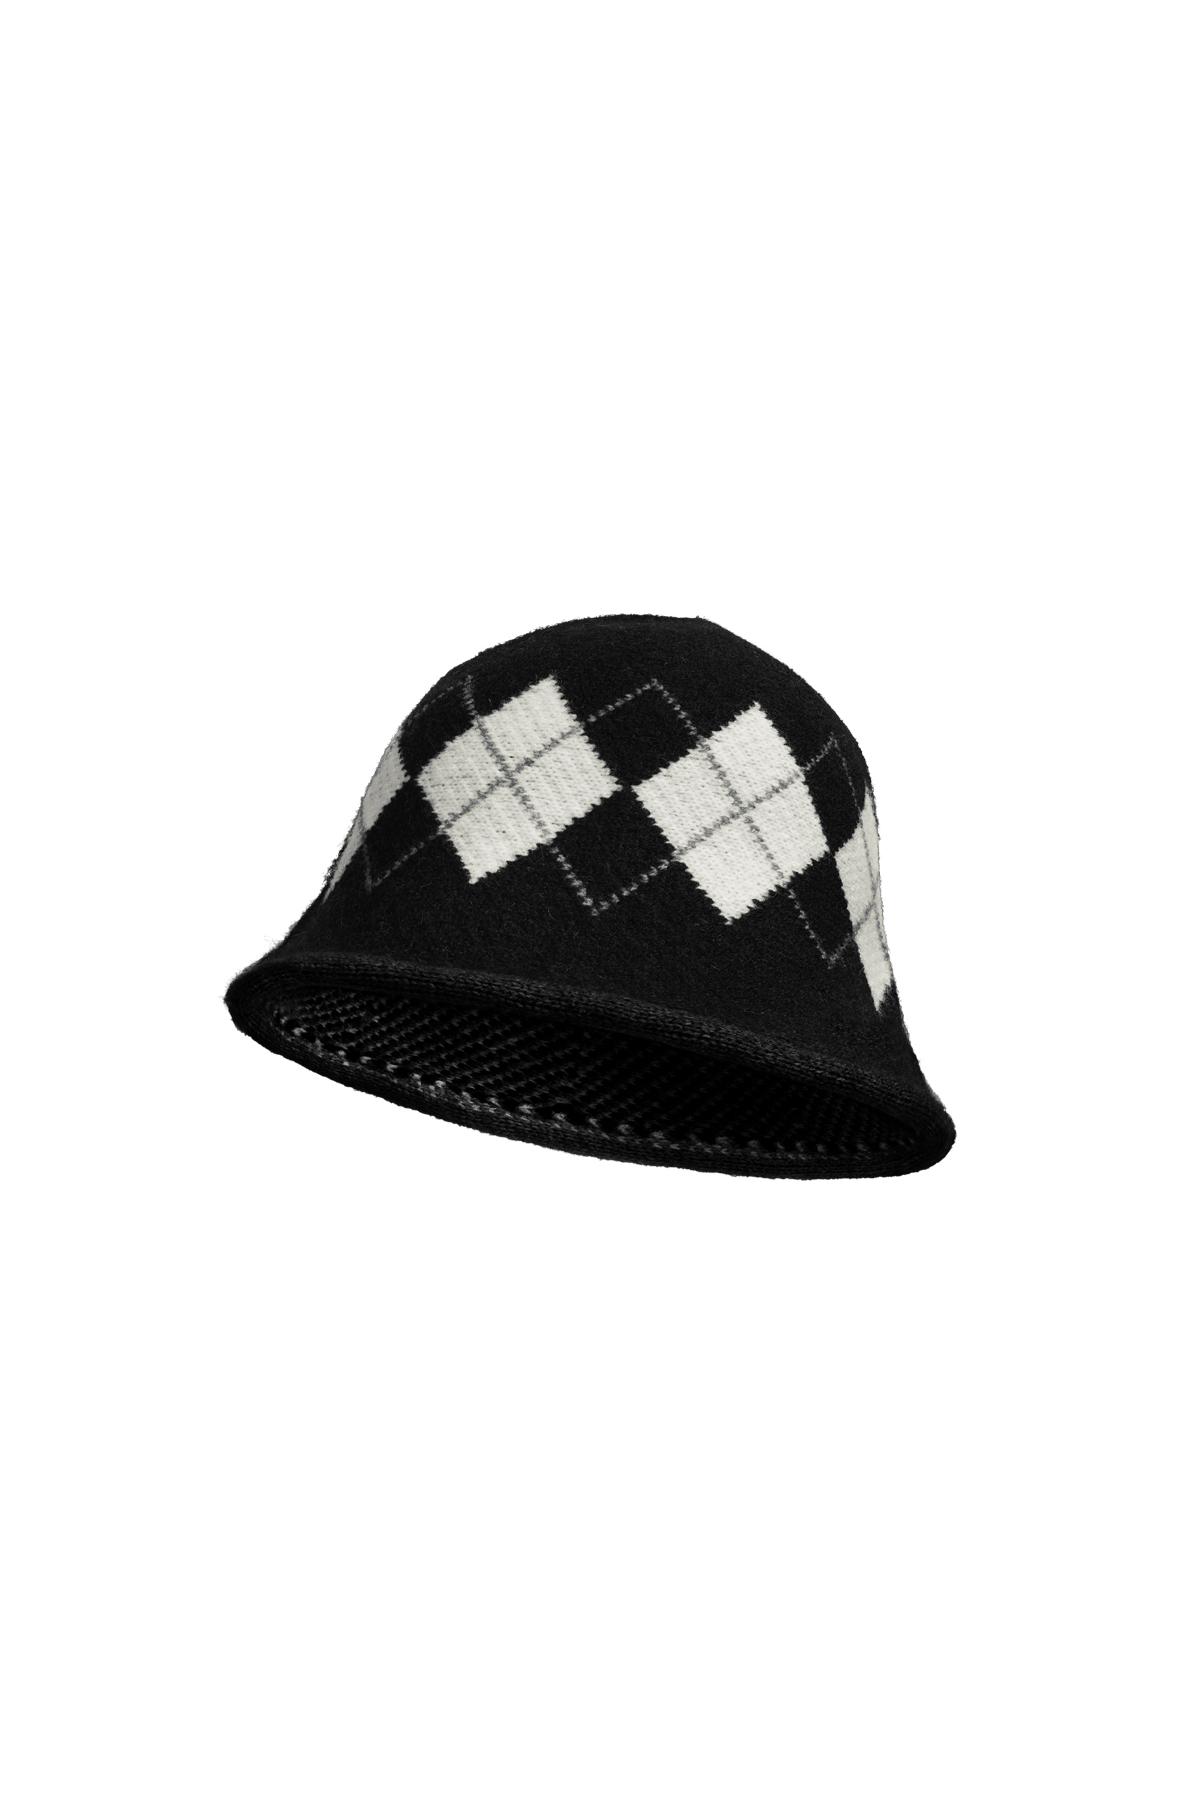 Cappello da pescatore a scacchi Black & White Acrylic h5 